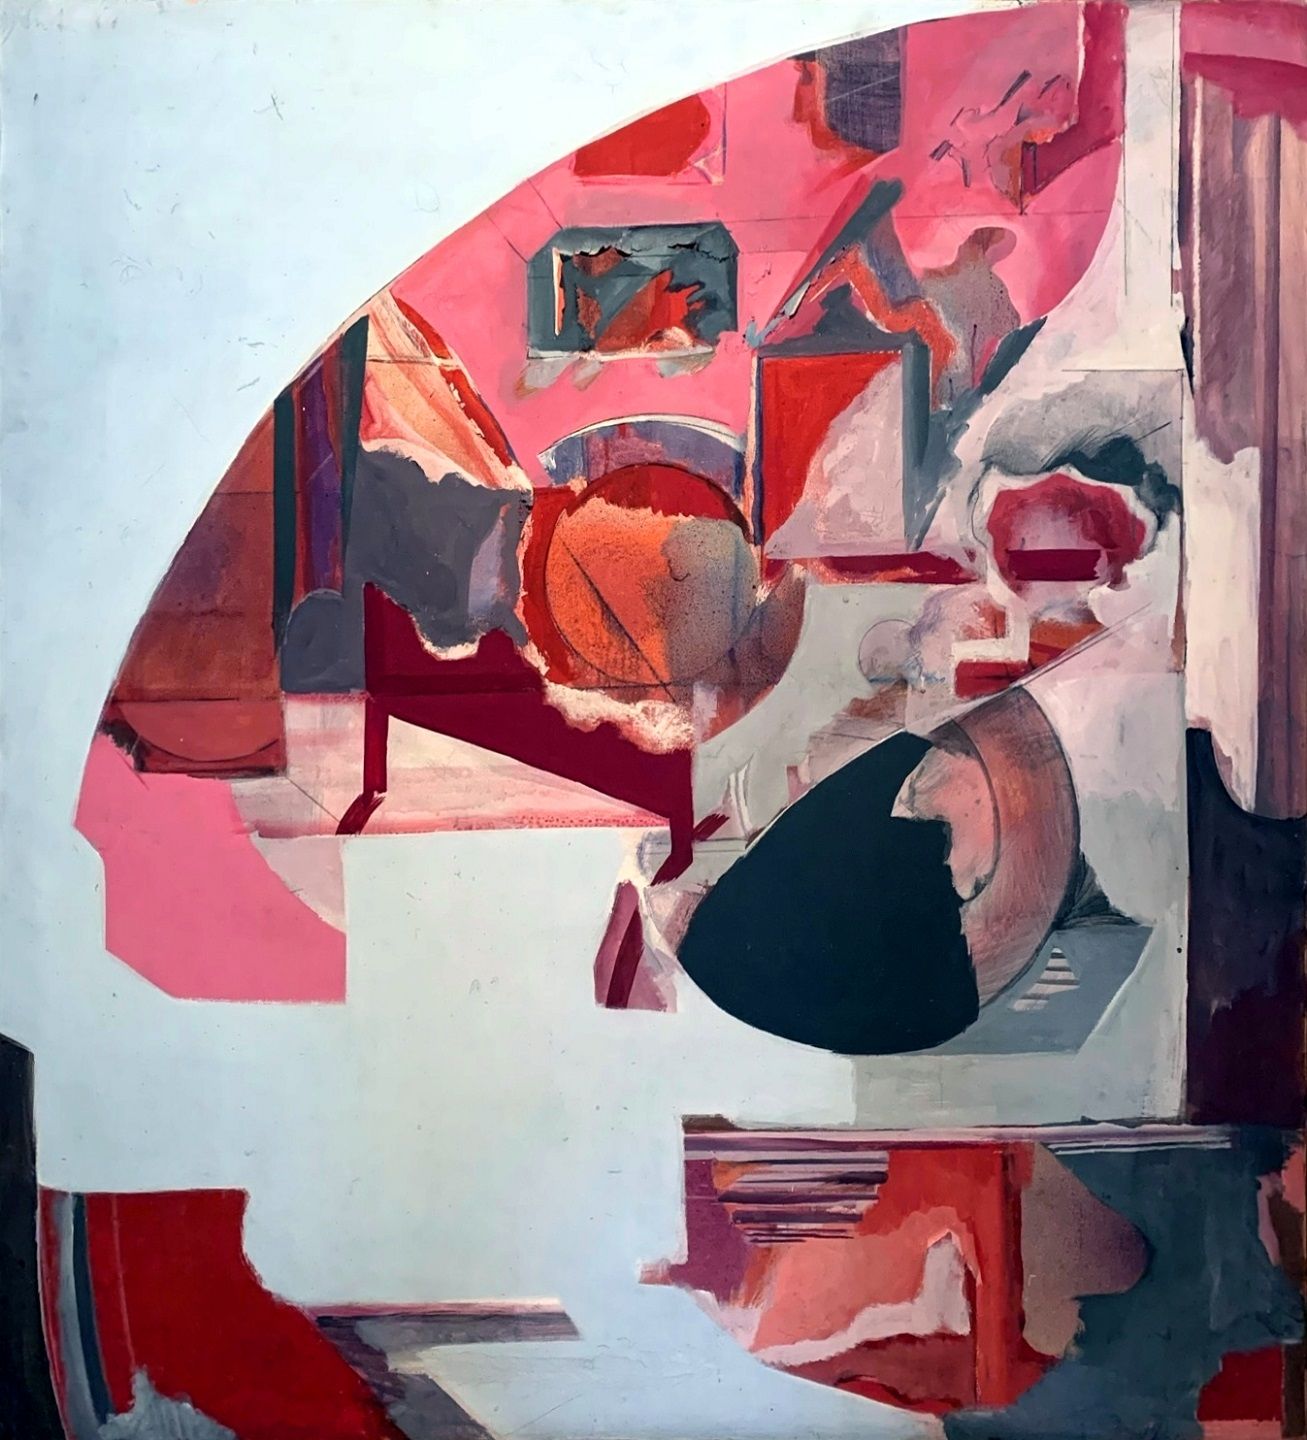 NANNI VALENTINI Frammento 1/4, 1966, olio su tela, 145x135 cm

firma dell’artist&hellip;